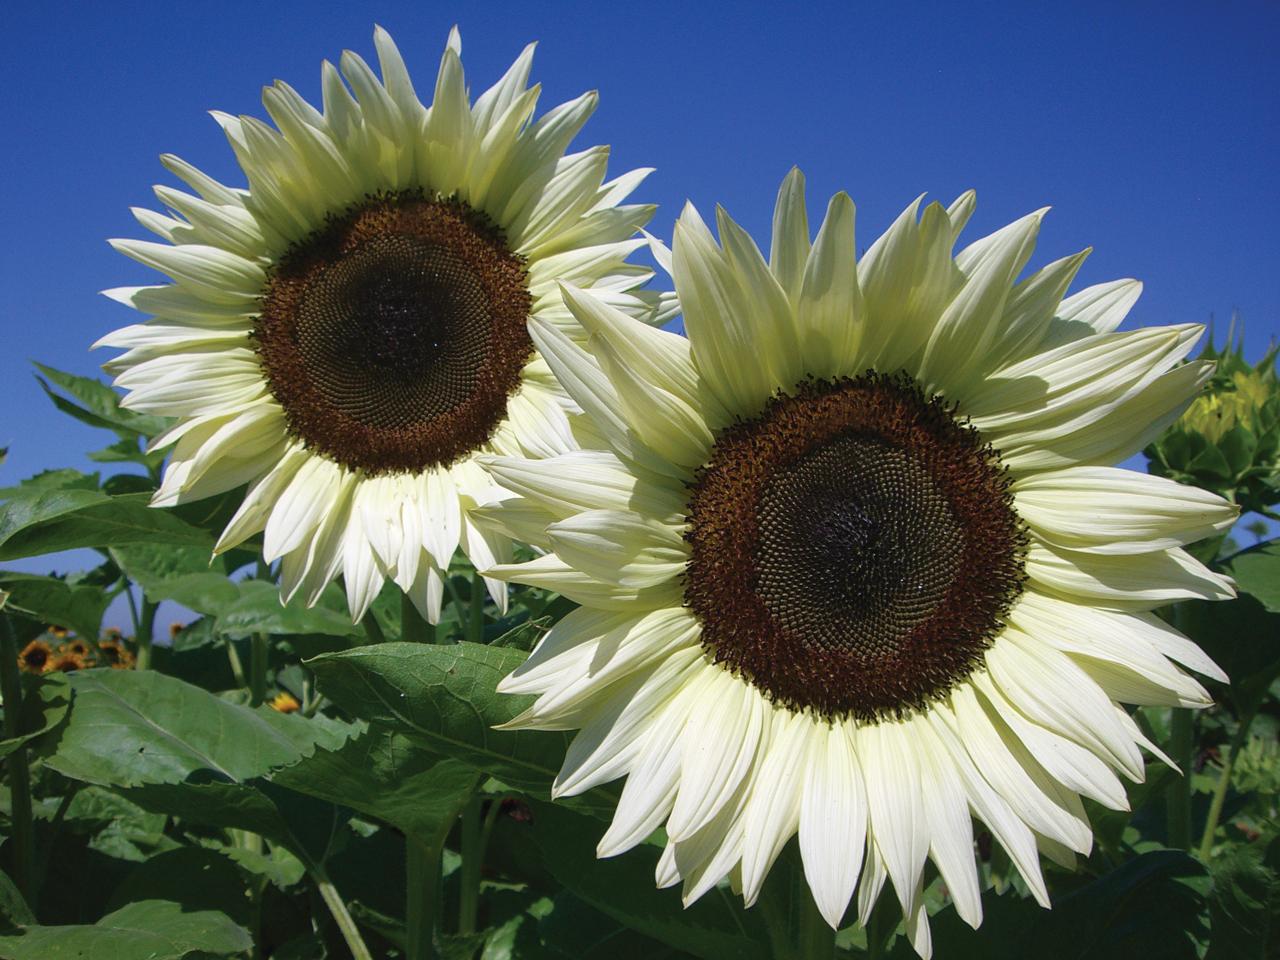 Where Do White Sunflowers Grow